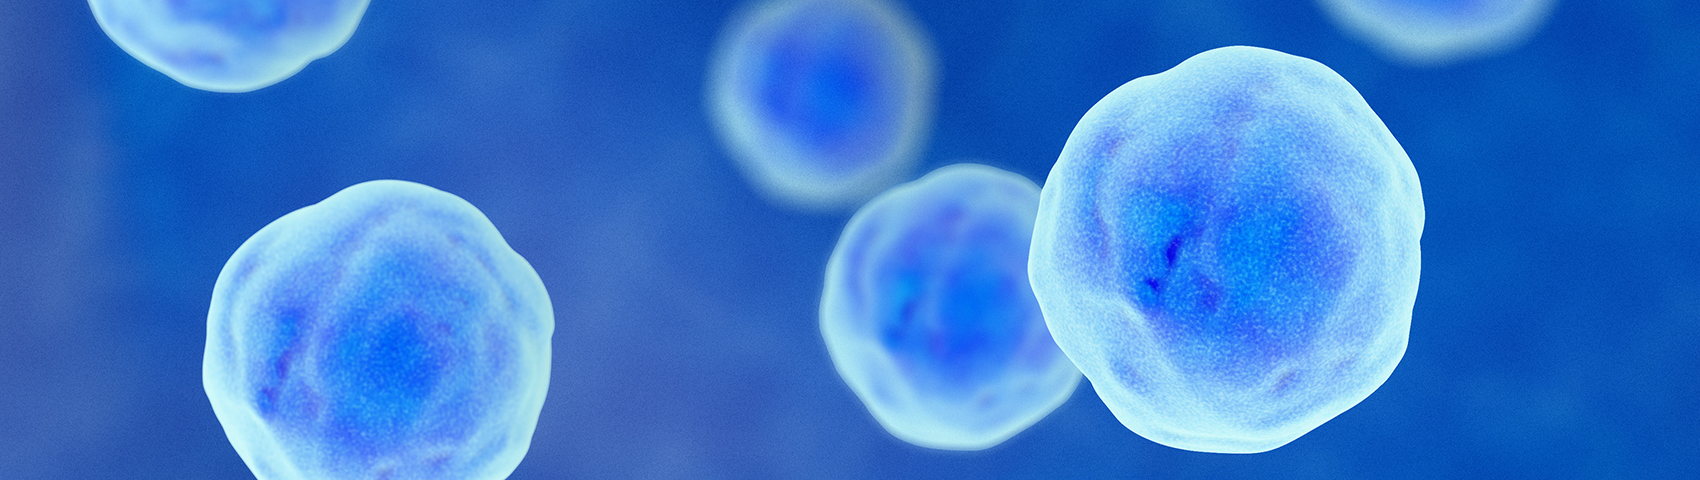 细胞的显微图像。它们呈蓝色的圆形